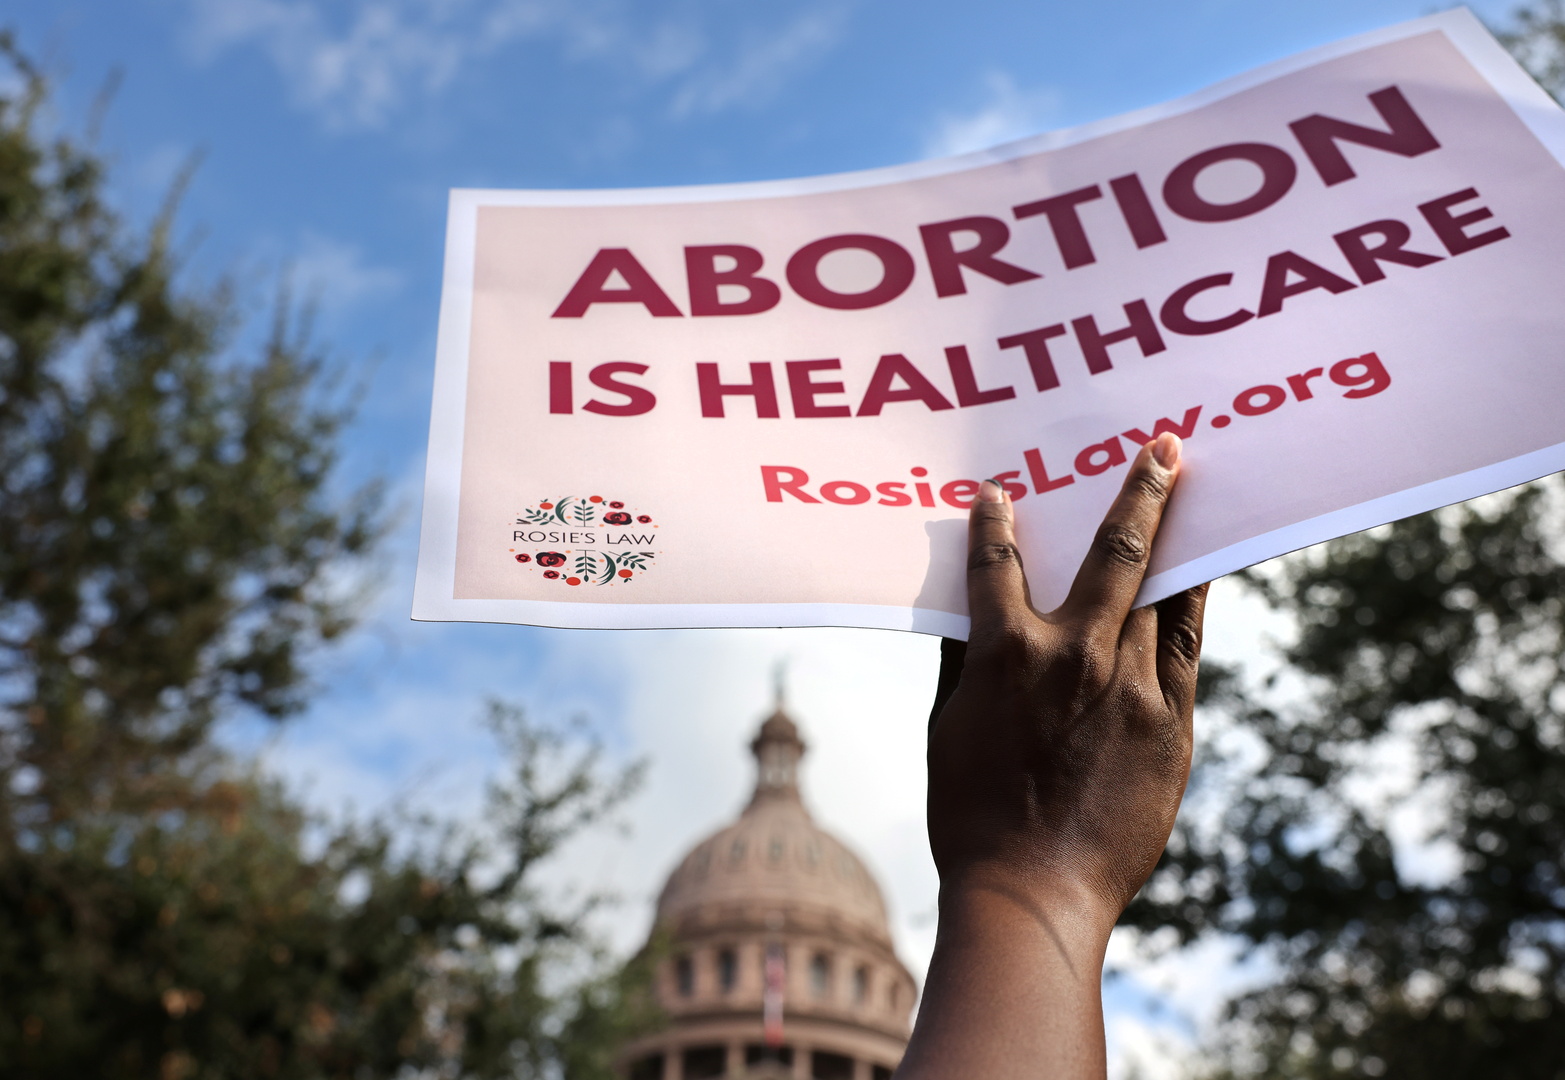 للمرة الرابعة.. المحكمة الأمريكية العليا ترفض طعنا بقانون تكساس حول منع الإجهاض